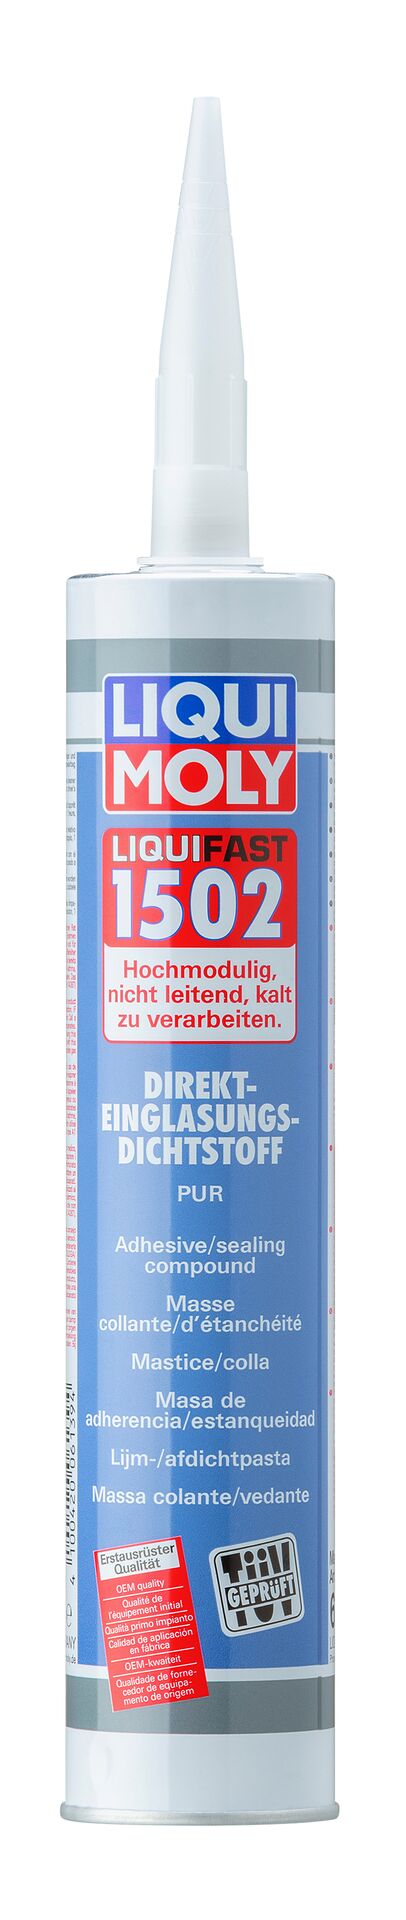 Liqui Moly Liquifast 1502 Scheibenkleber Scheibenreparatur Kleber 310 ml